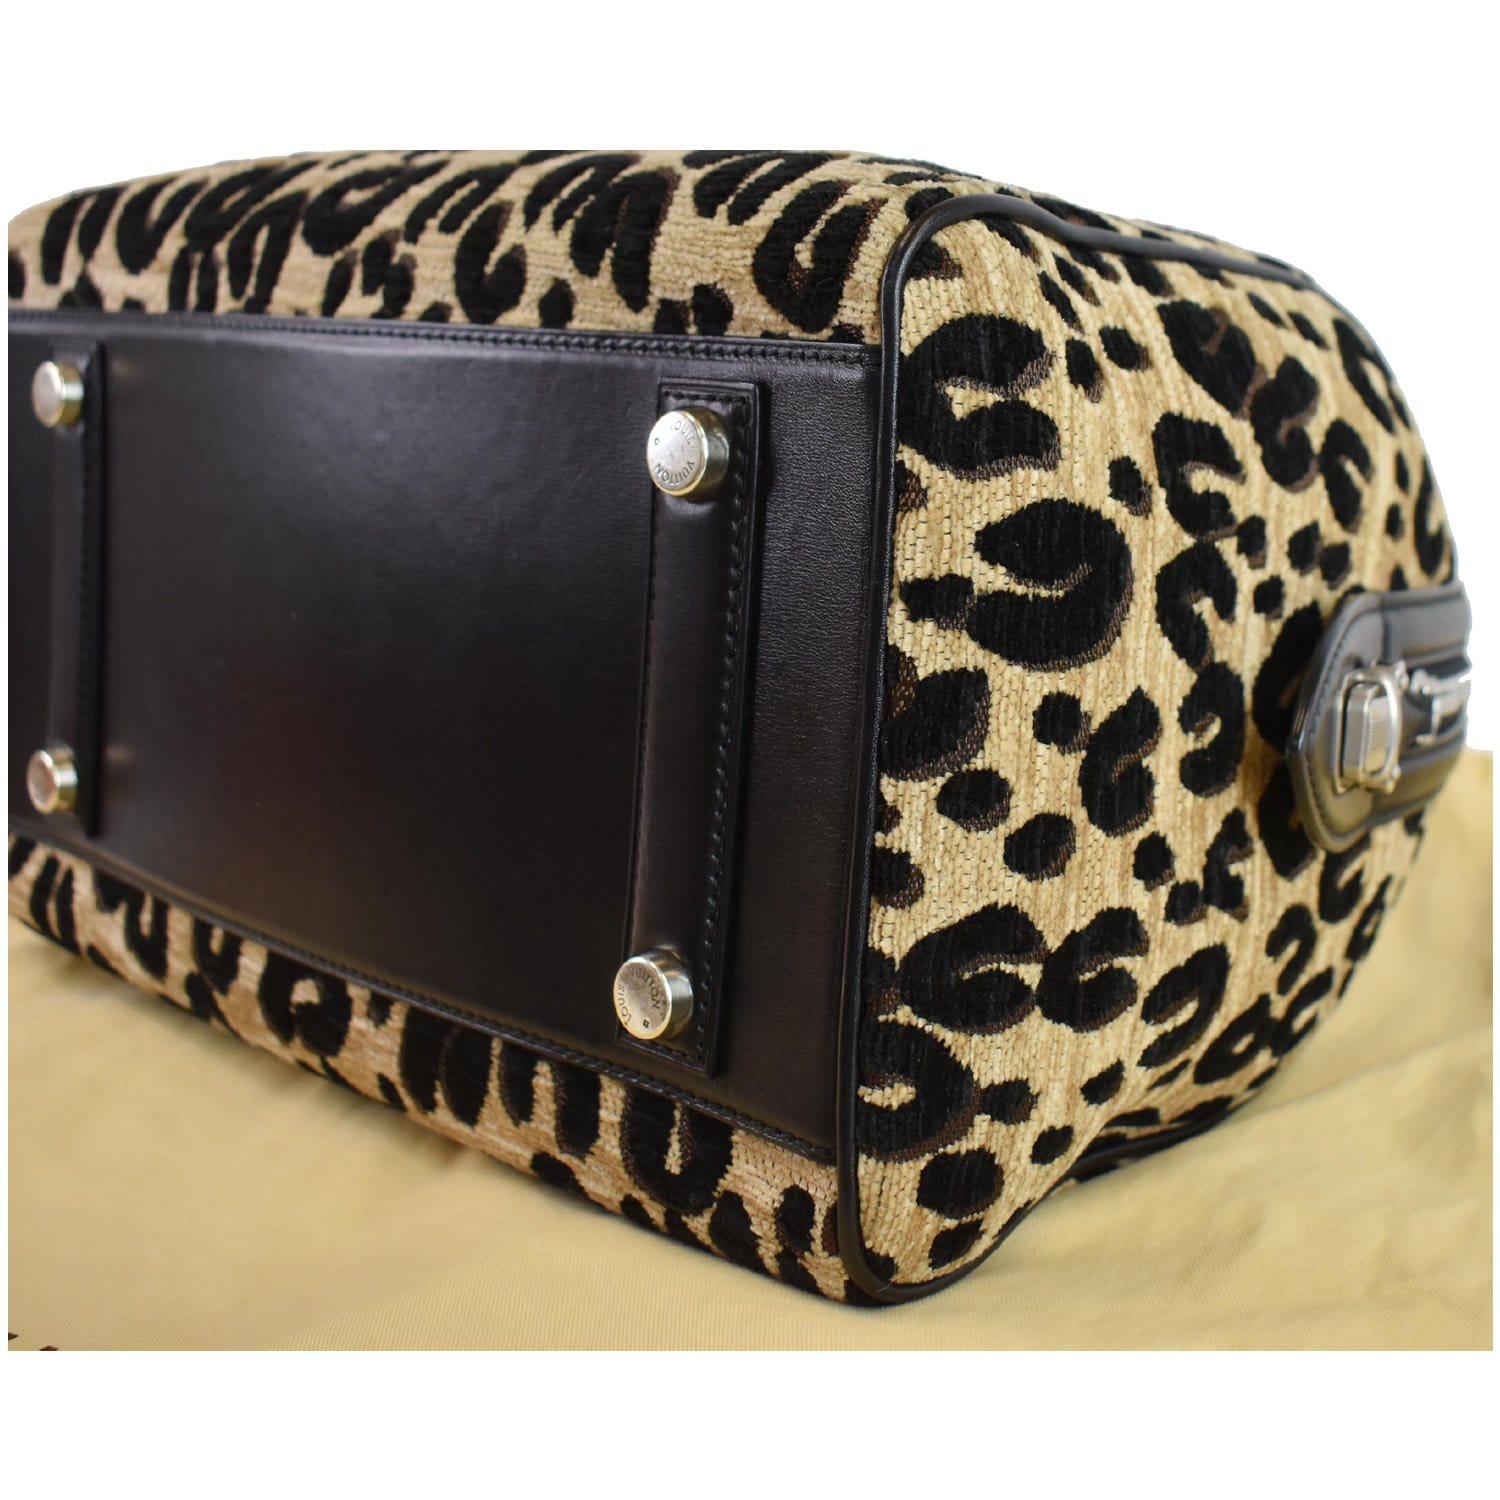 LOUIS VUITTON Jacquard Velvet Leopard Print Stephen Sprouse North South Bag  Black 949285